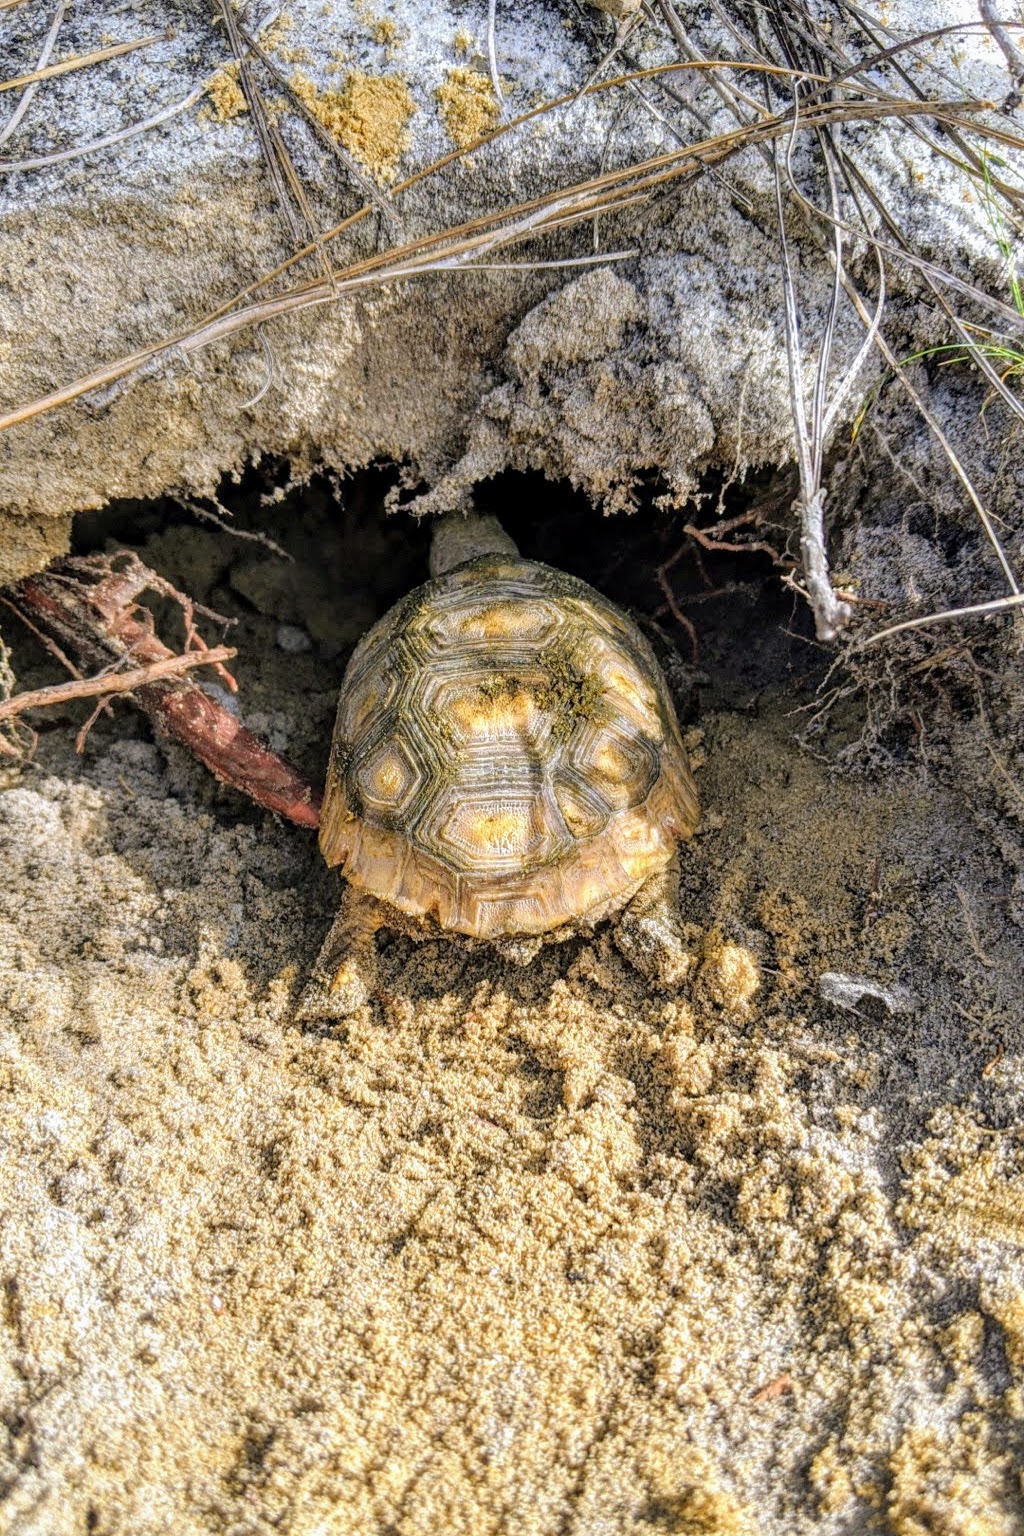 headstart release tortoise